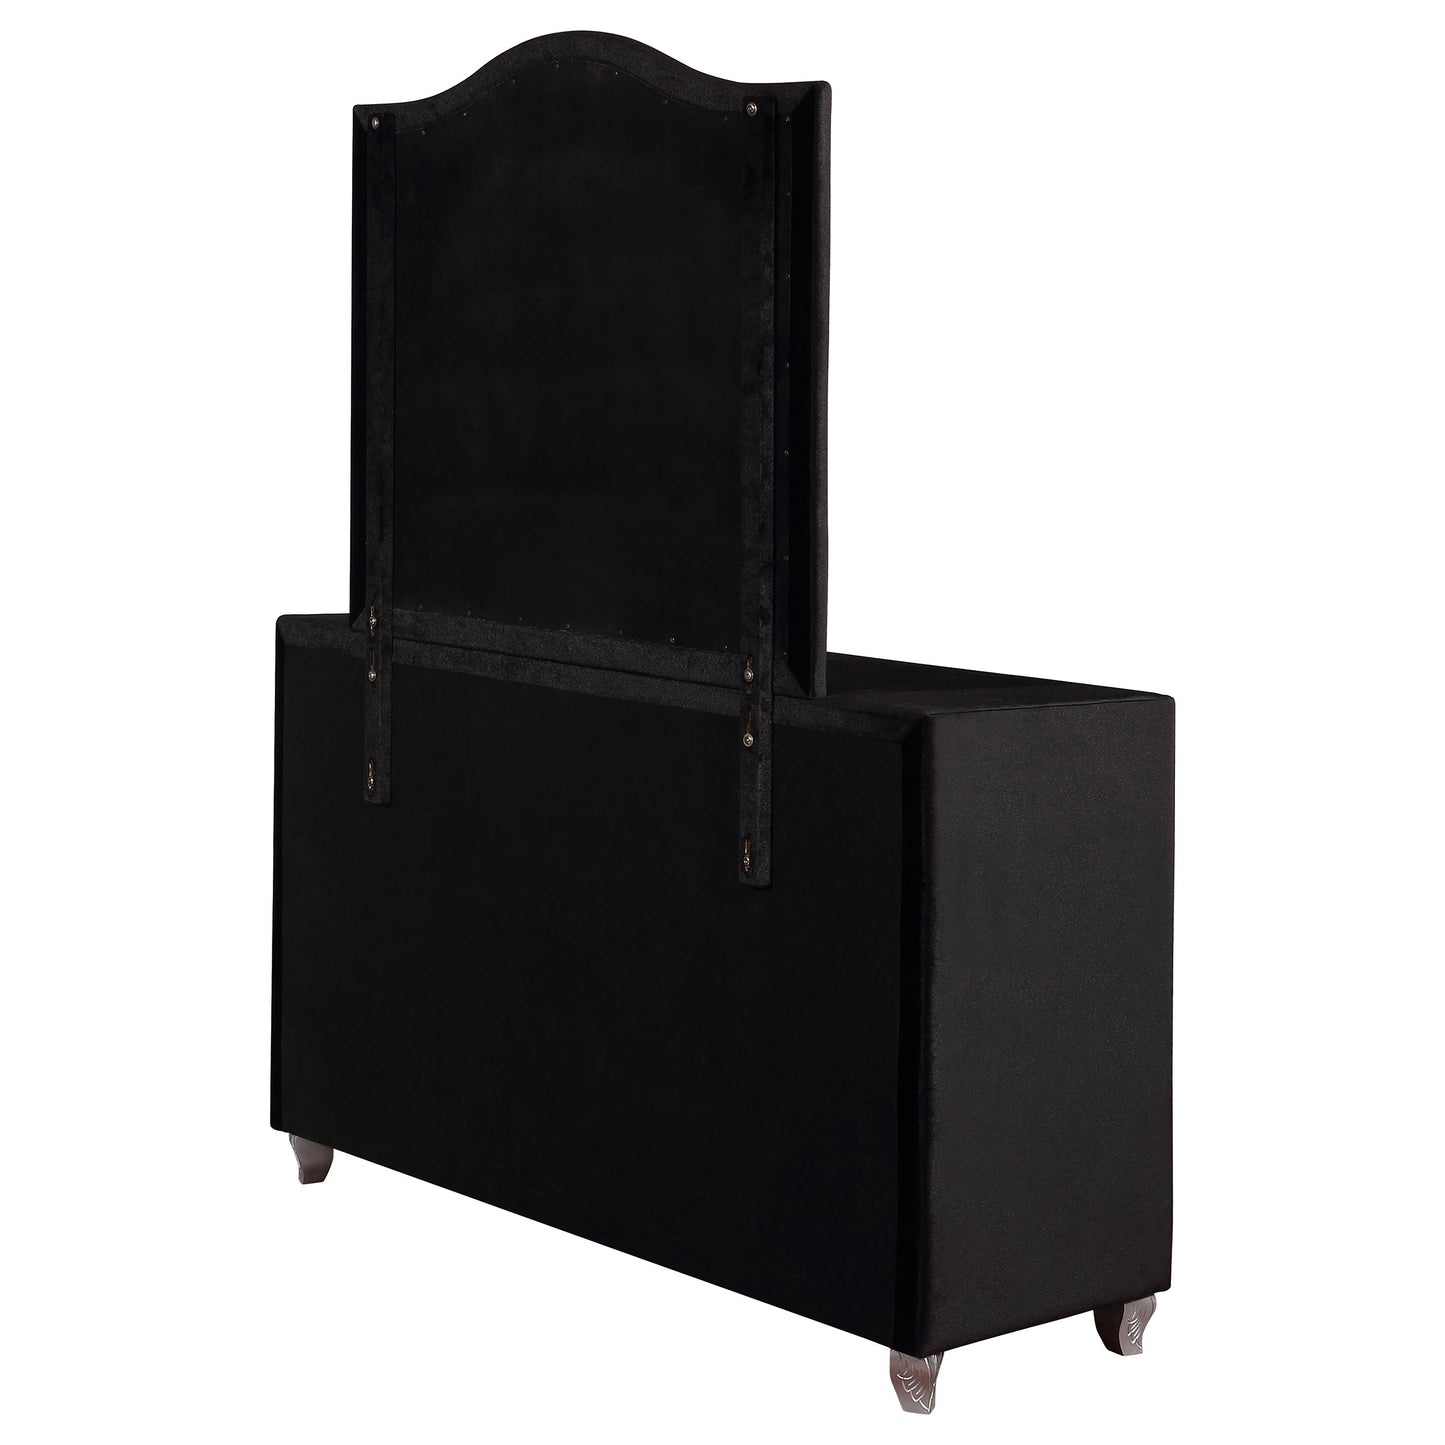 Deanna 7-drawer Rectangular Dresser with Mirror Black